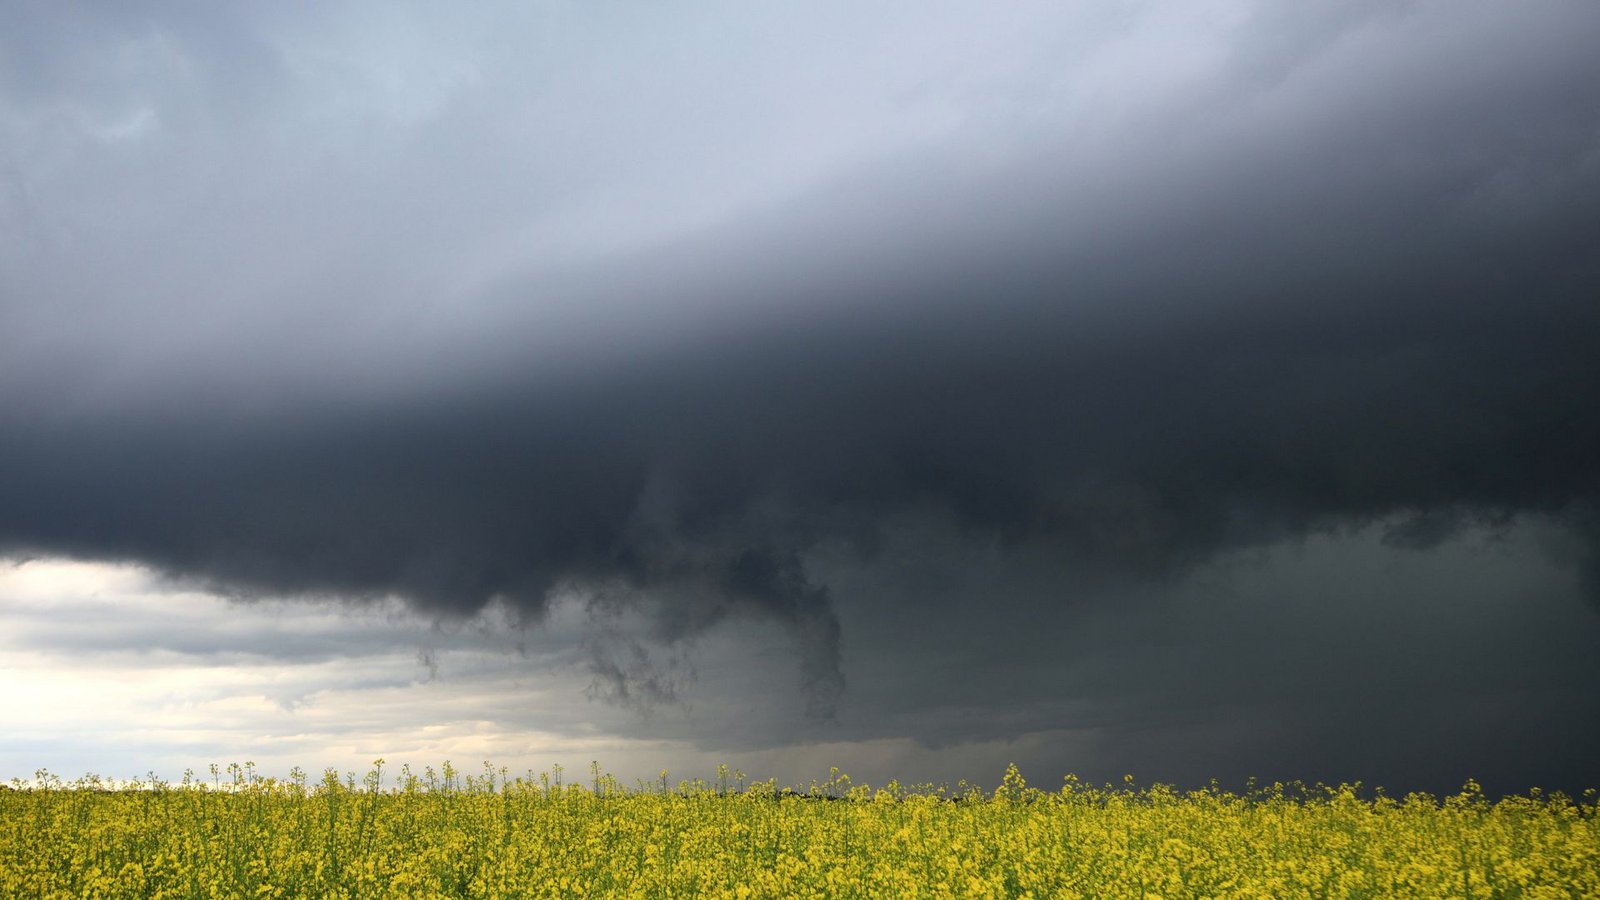 irchheim am Ries: Dunkle Gewitterwolken ziehen hinter einem blühenden Rapsfeld auf.Foto: dpa/Alexander Wolf